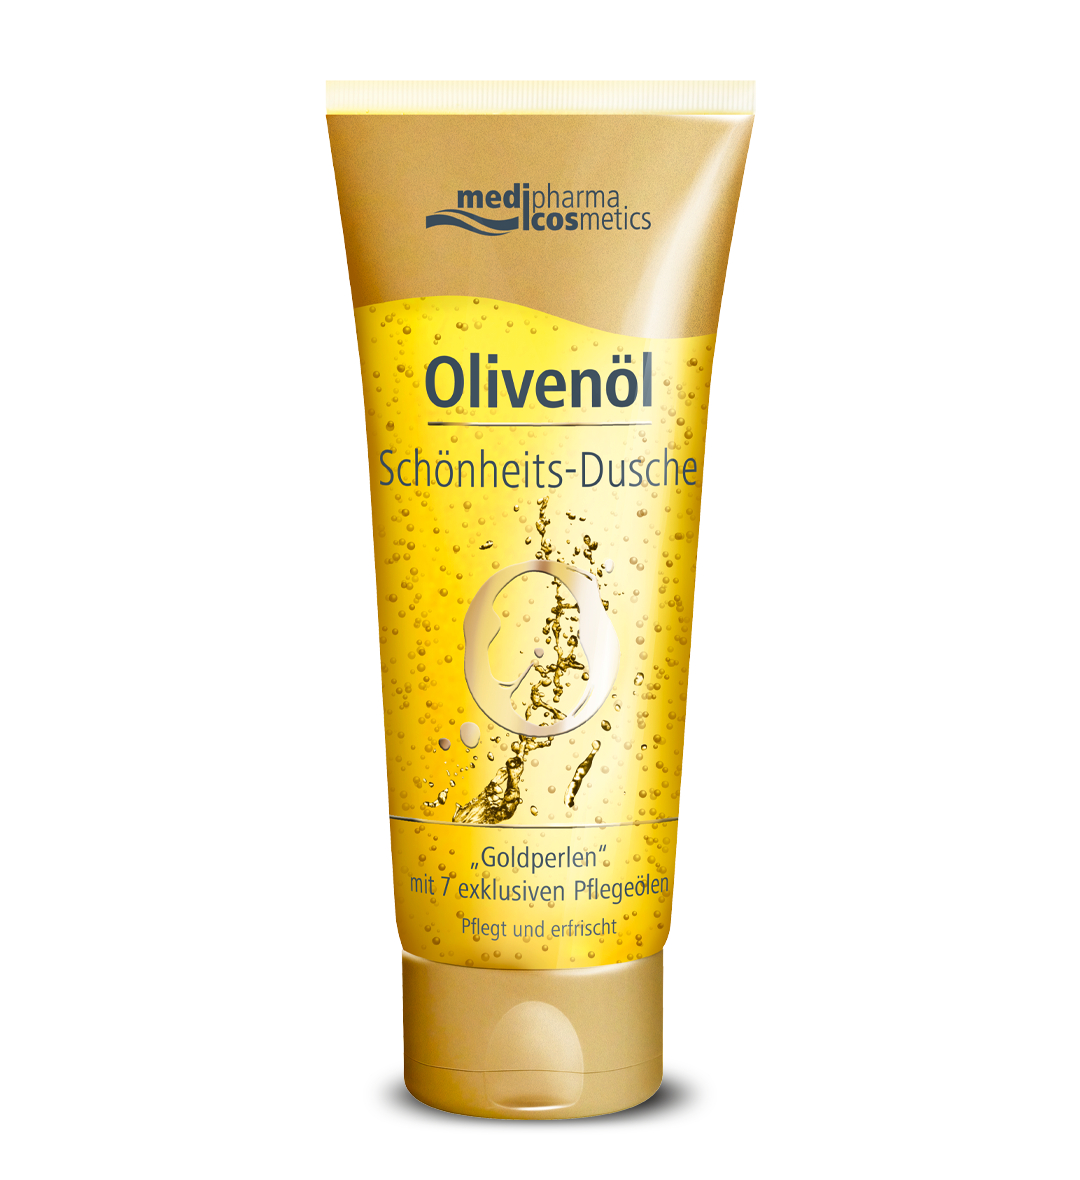 Гель для душа Medipharma Cosmetics Olivenol с 7 питательными маслами, 200 мл